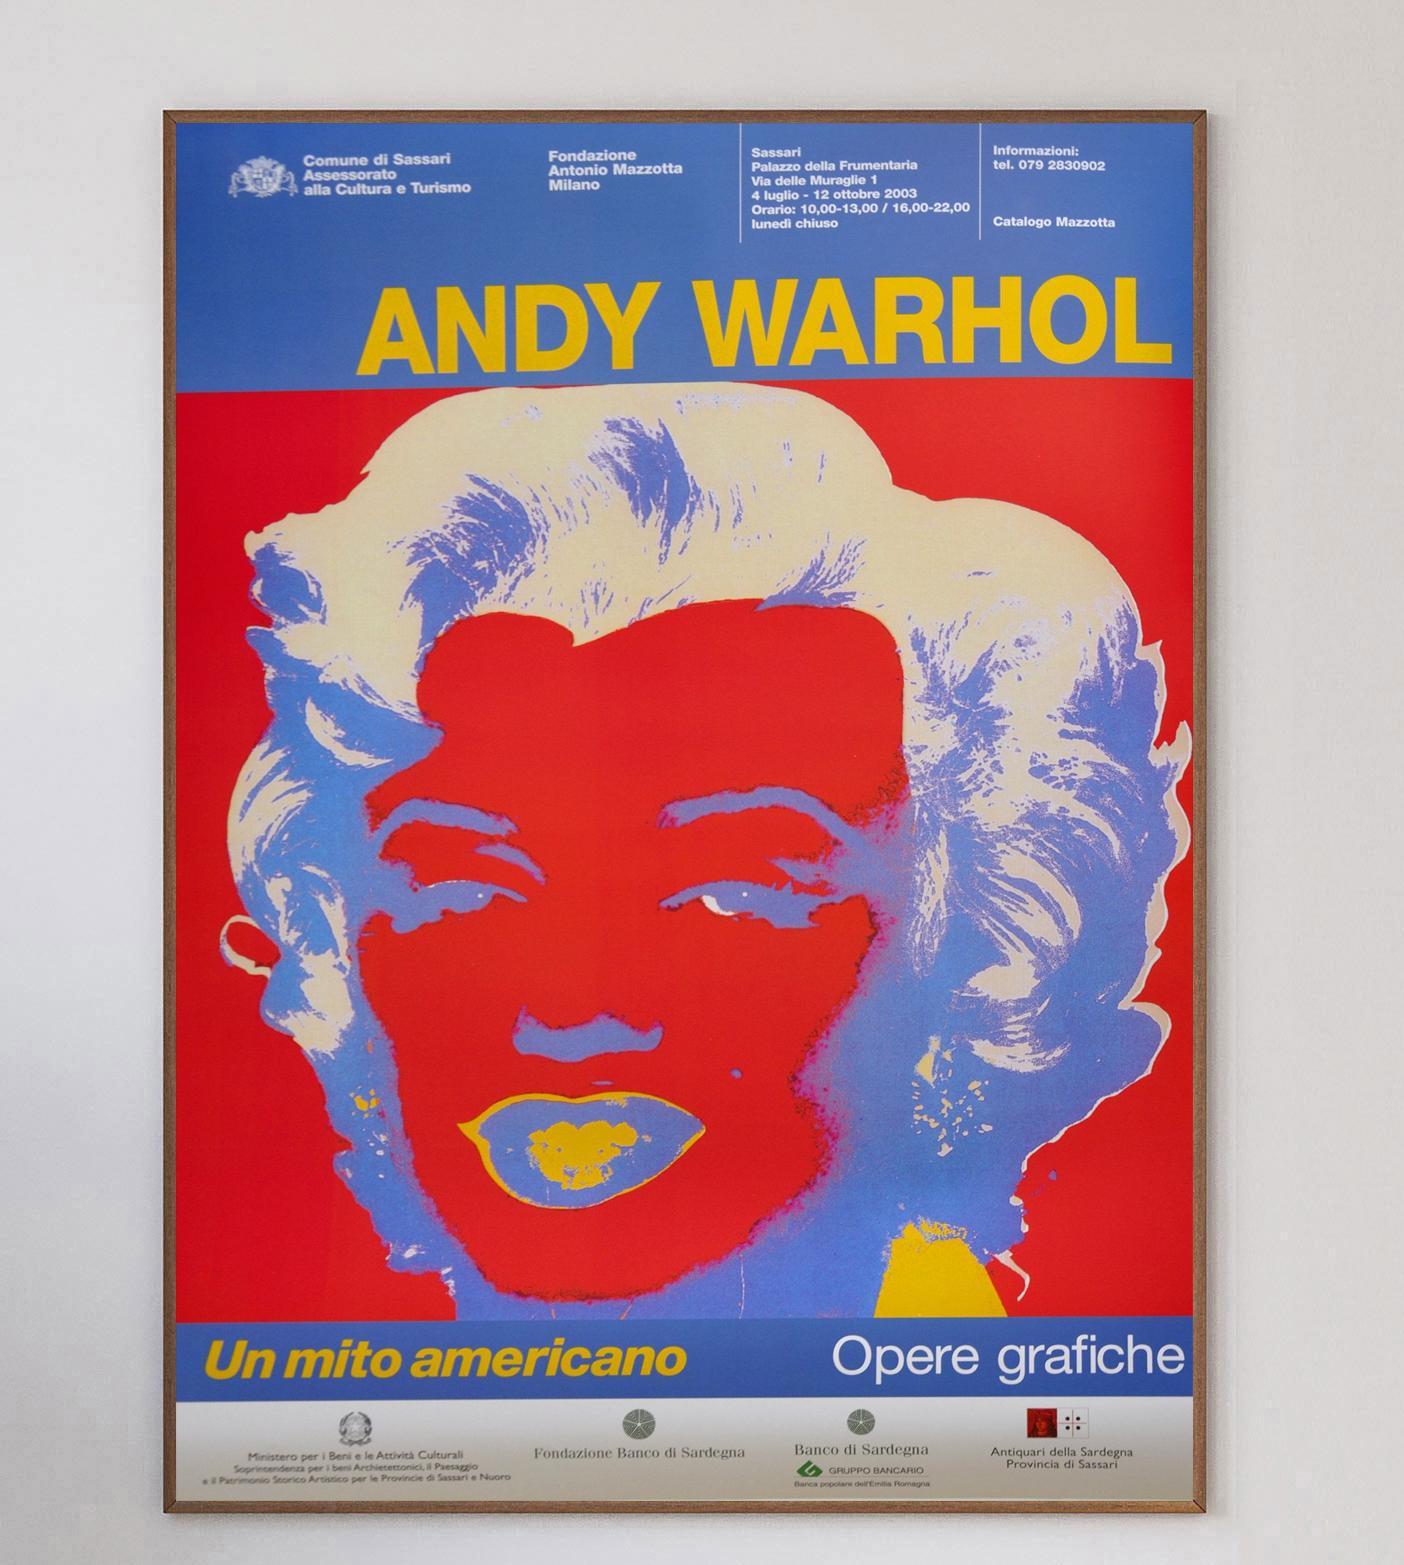 Dieses atemberaubende, helle und lebendige Plakat wurde für die Ausstellung Andy Warhol - Un Mito Americano oder 